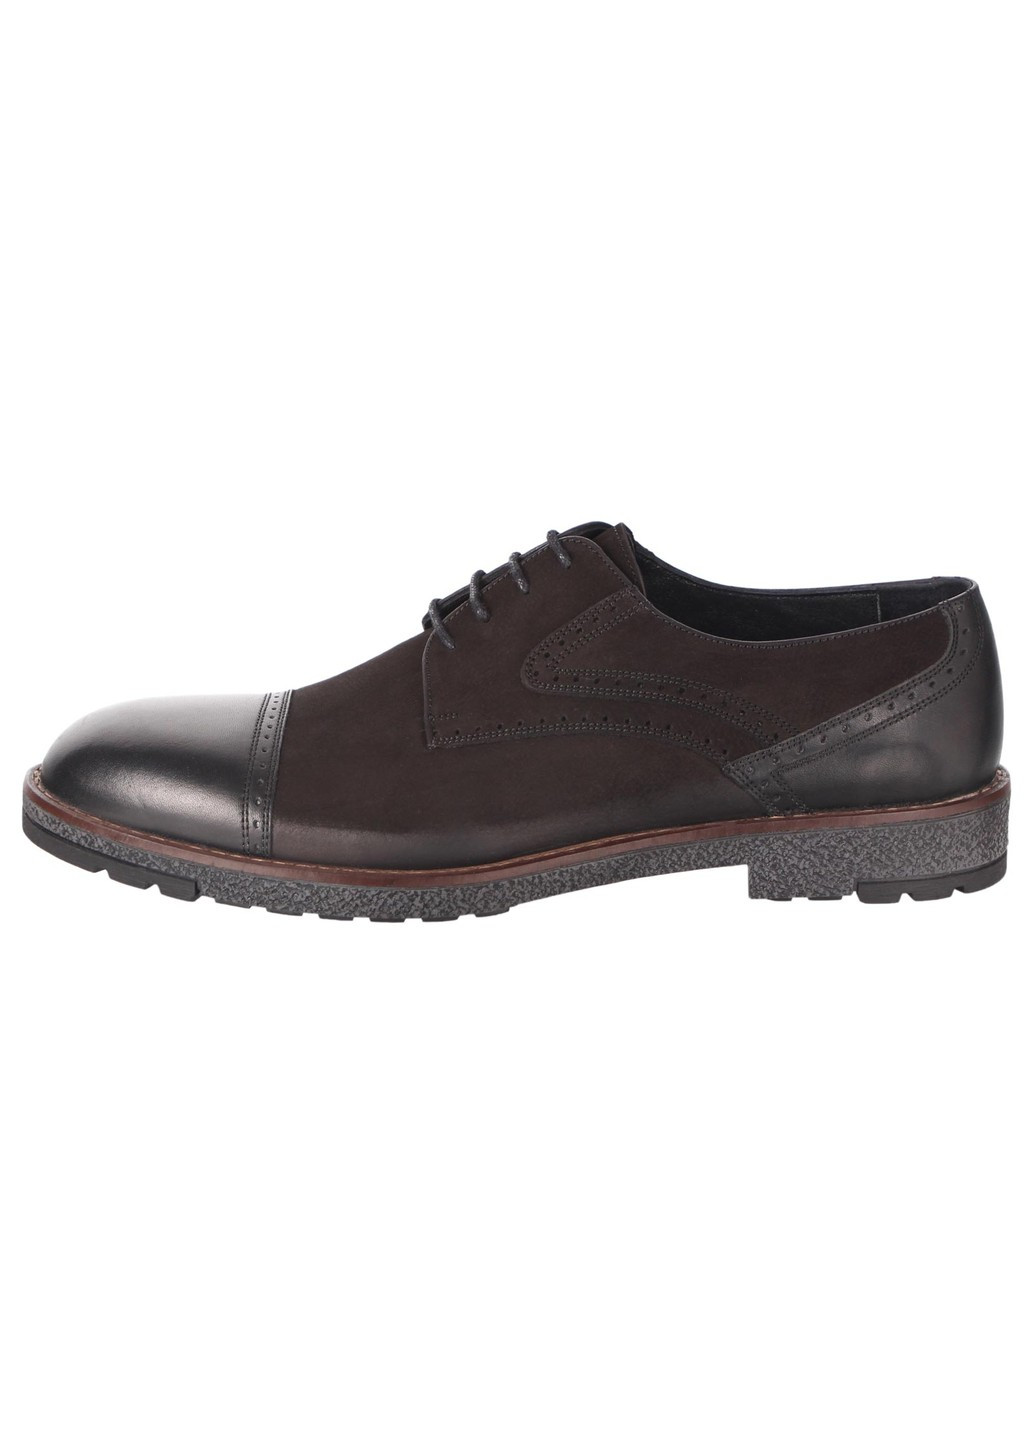 Черные мужские классические туфли 19721 Alvito на шнурках